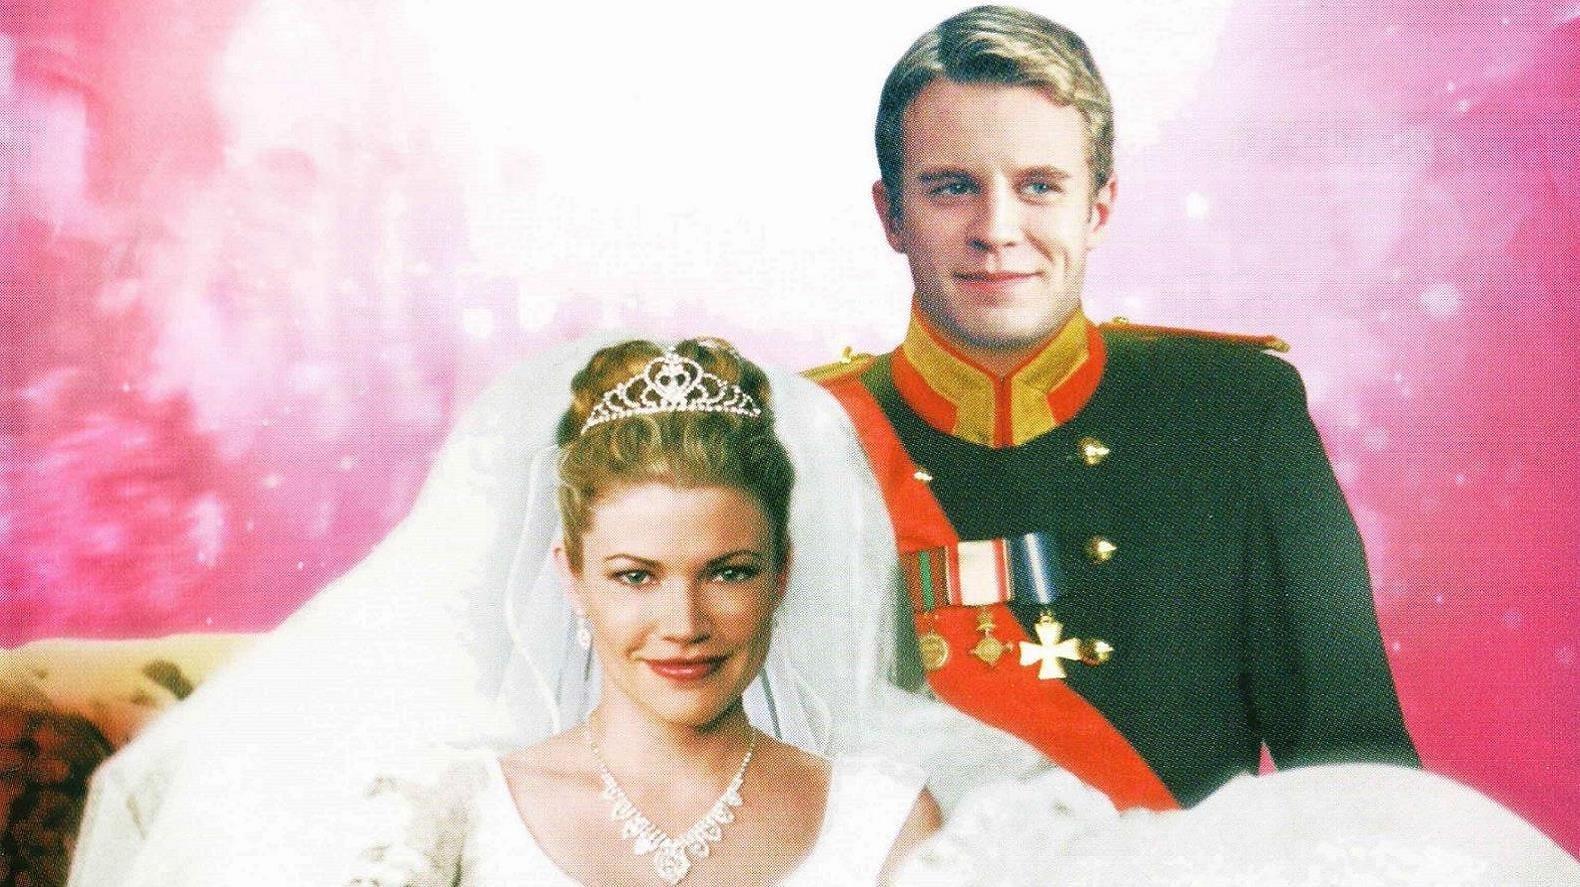 The Prince & Me 2: The Royal Wedding backdrop